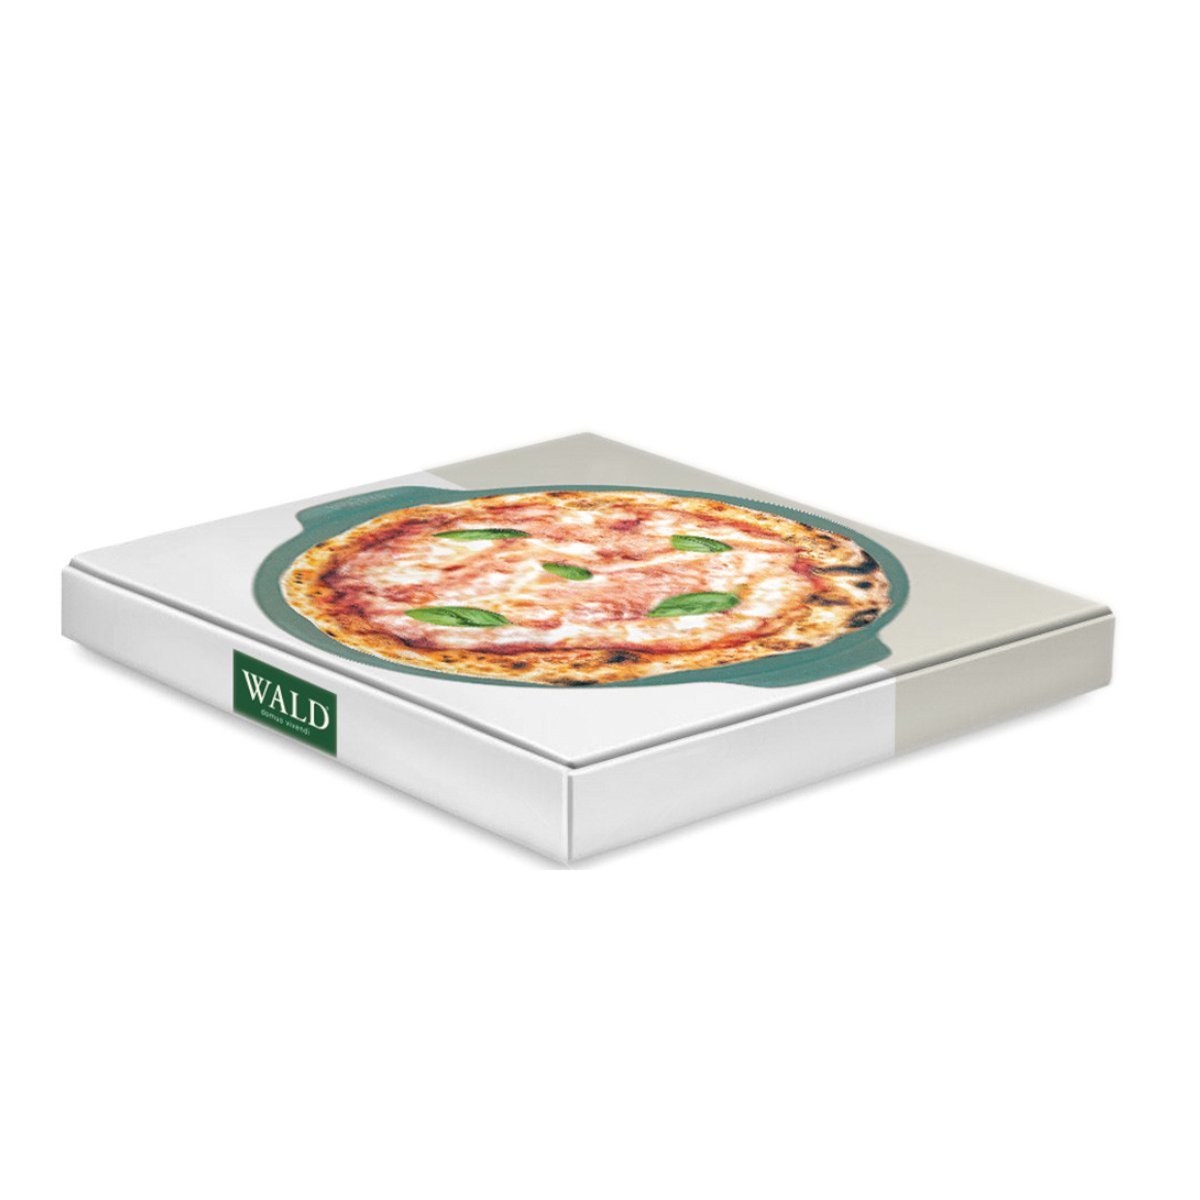 WALD Pizzastein Pizzaplatte Ton, cm, dunkelgrau, durchgebrannt glasiert 34 und anthrazit